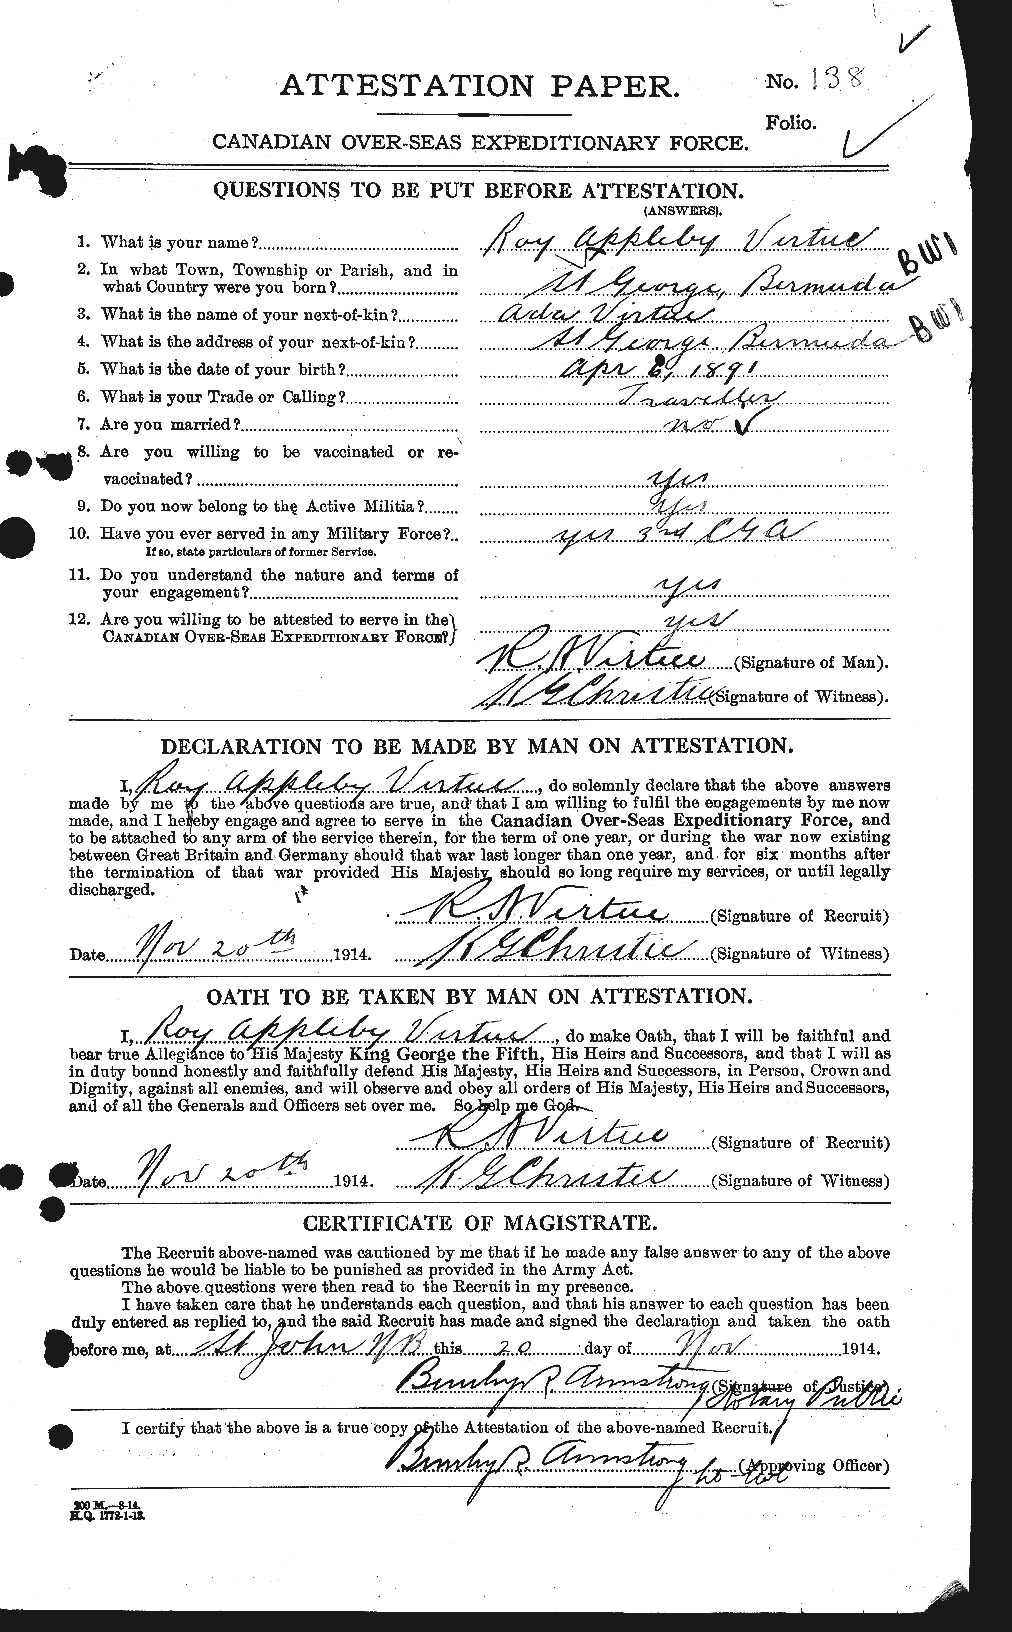 Dossiers du Personnel de la Première Guerre mondiale - CEC 650417a